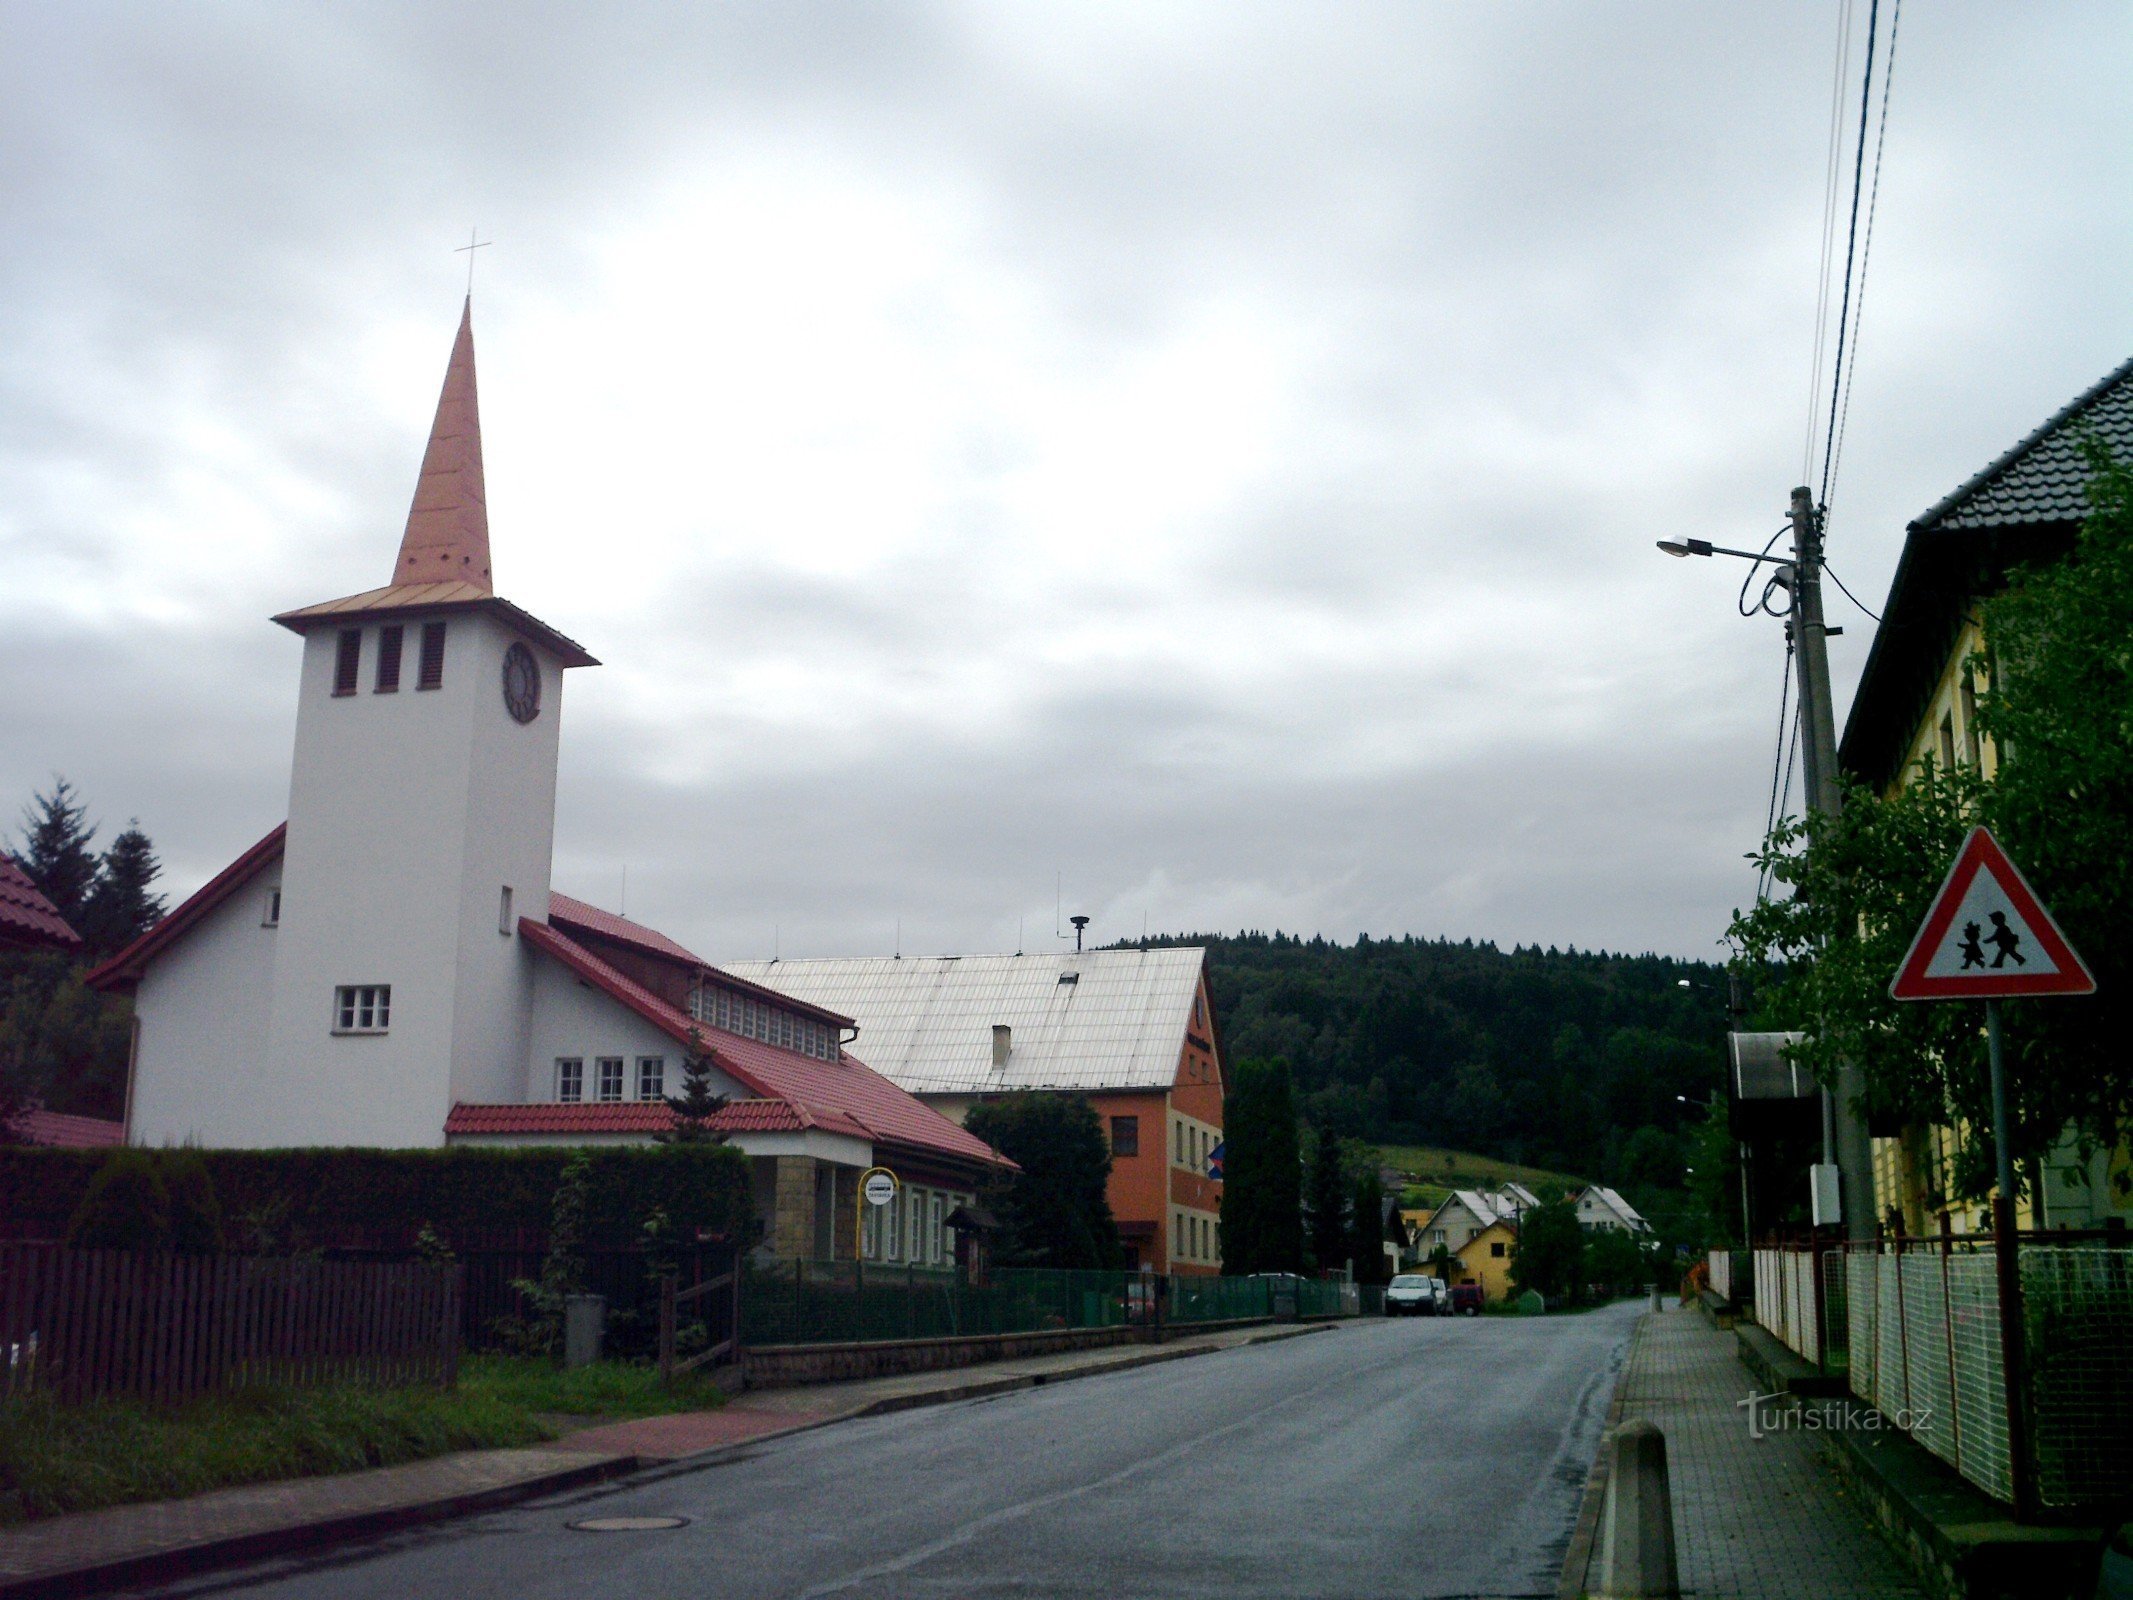 Evangelische kerk, daarachter is het gemeentehuis.